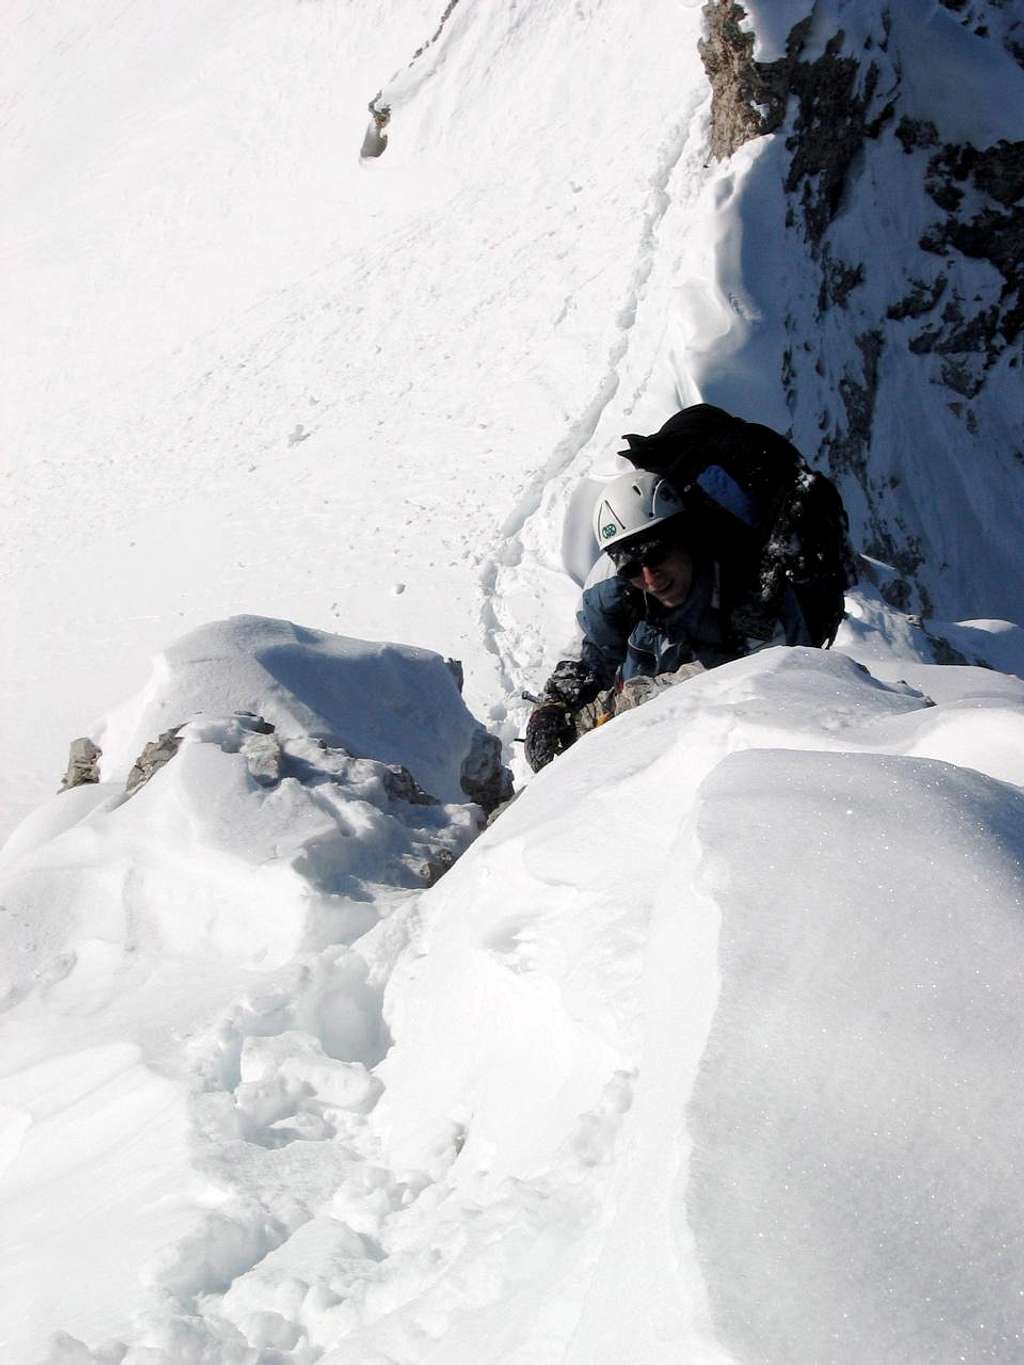 Jubiläumsgrat in Winter: Full body climbing